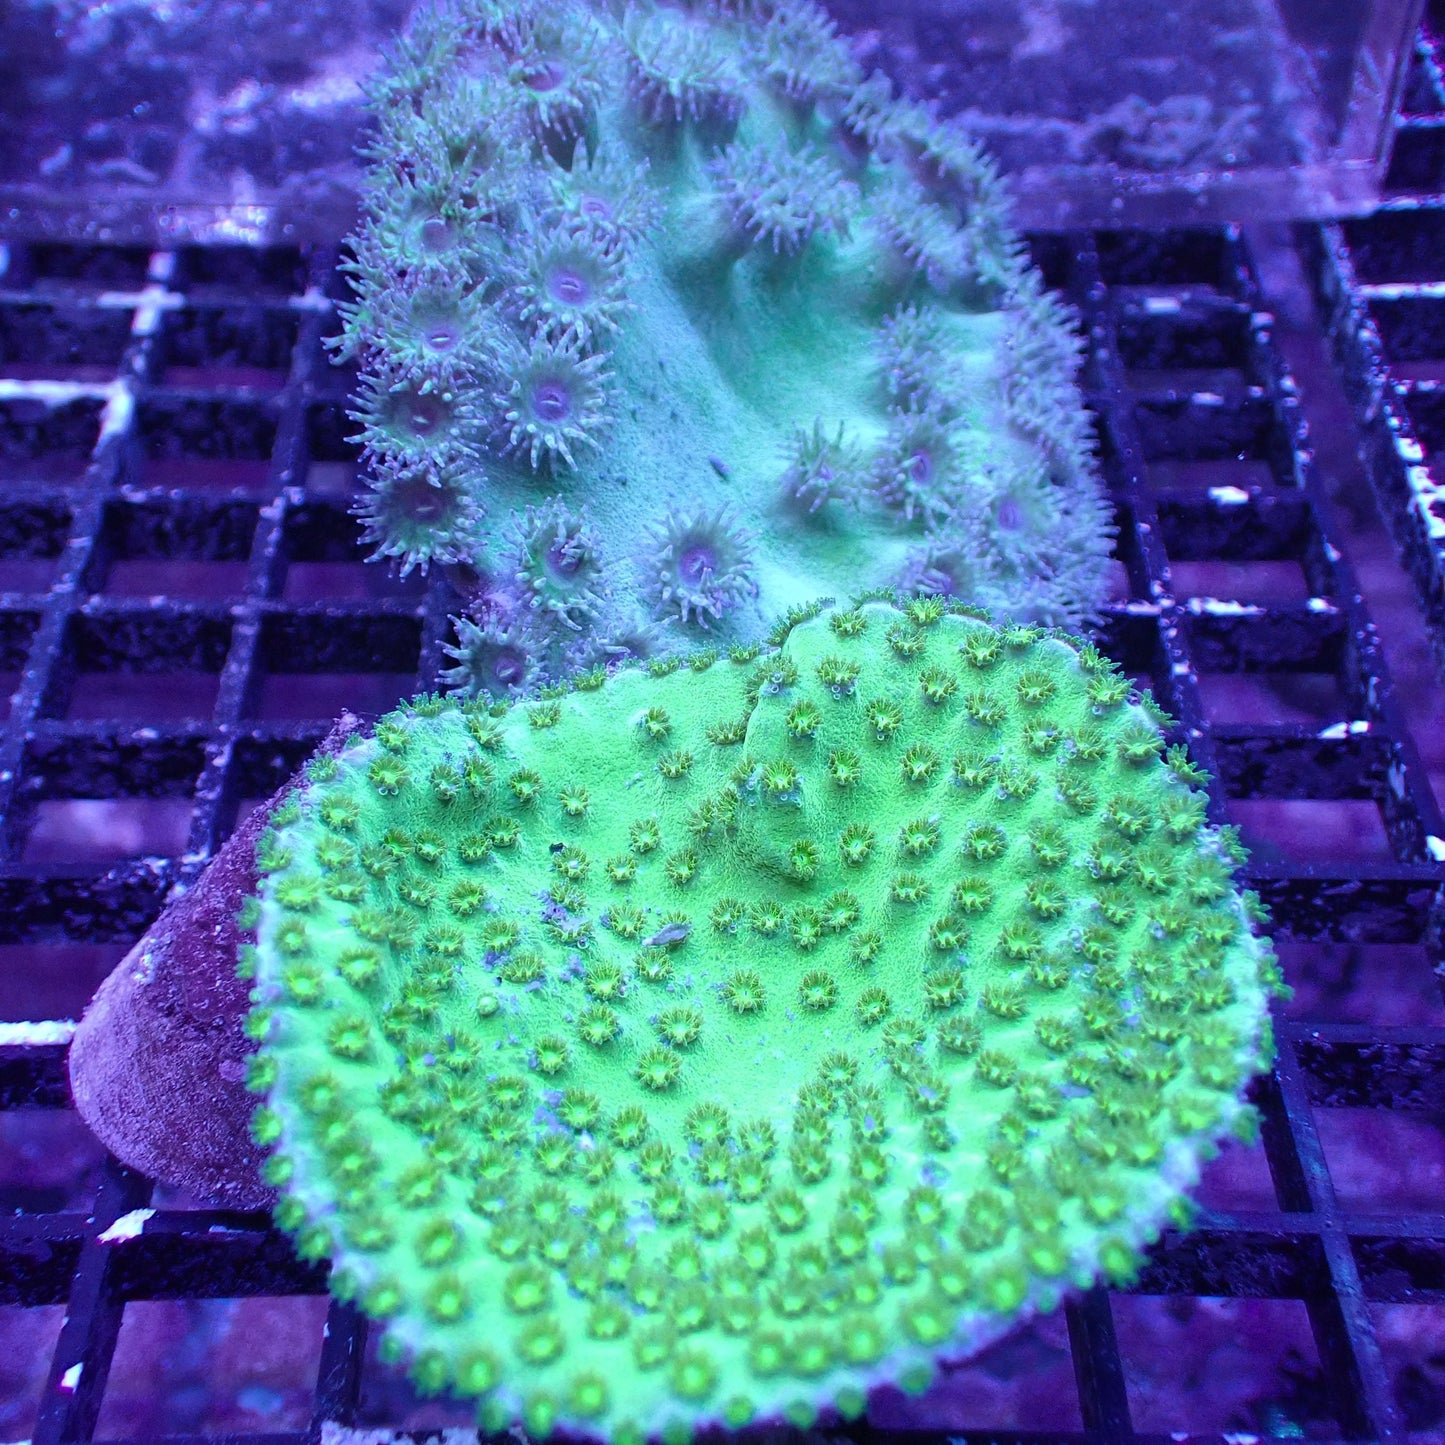 Pagoda Cup Corals (Turbinaria sp.)